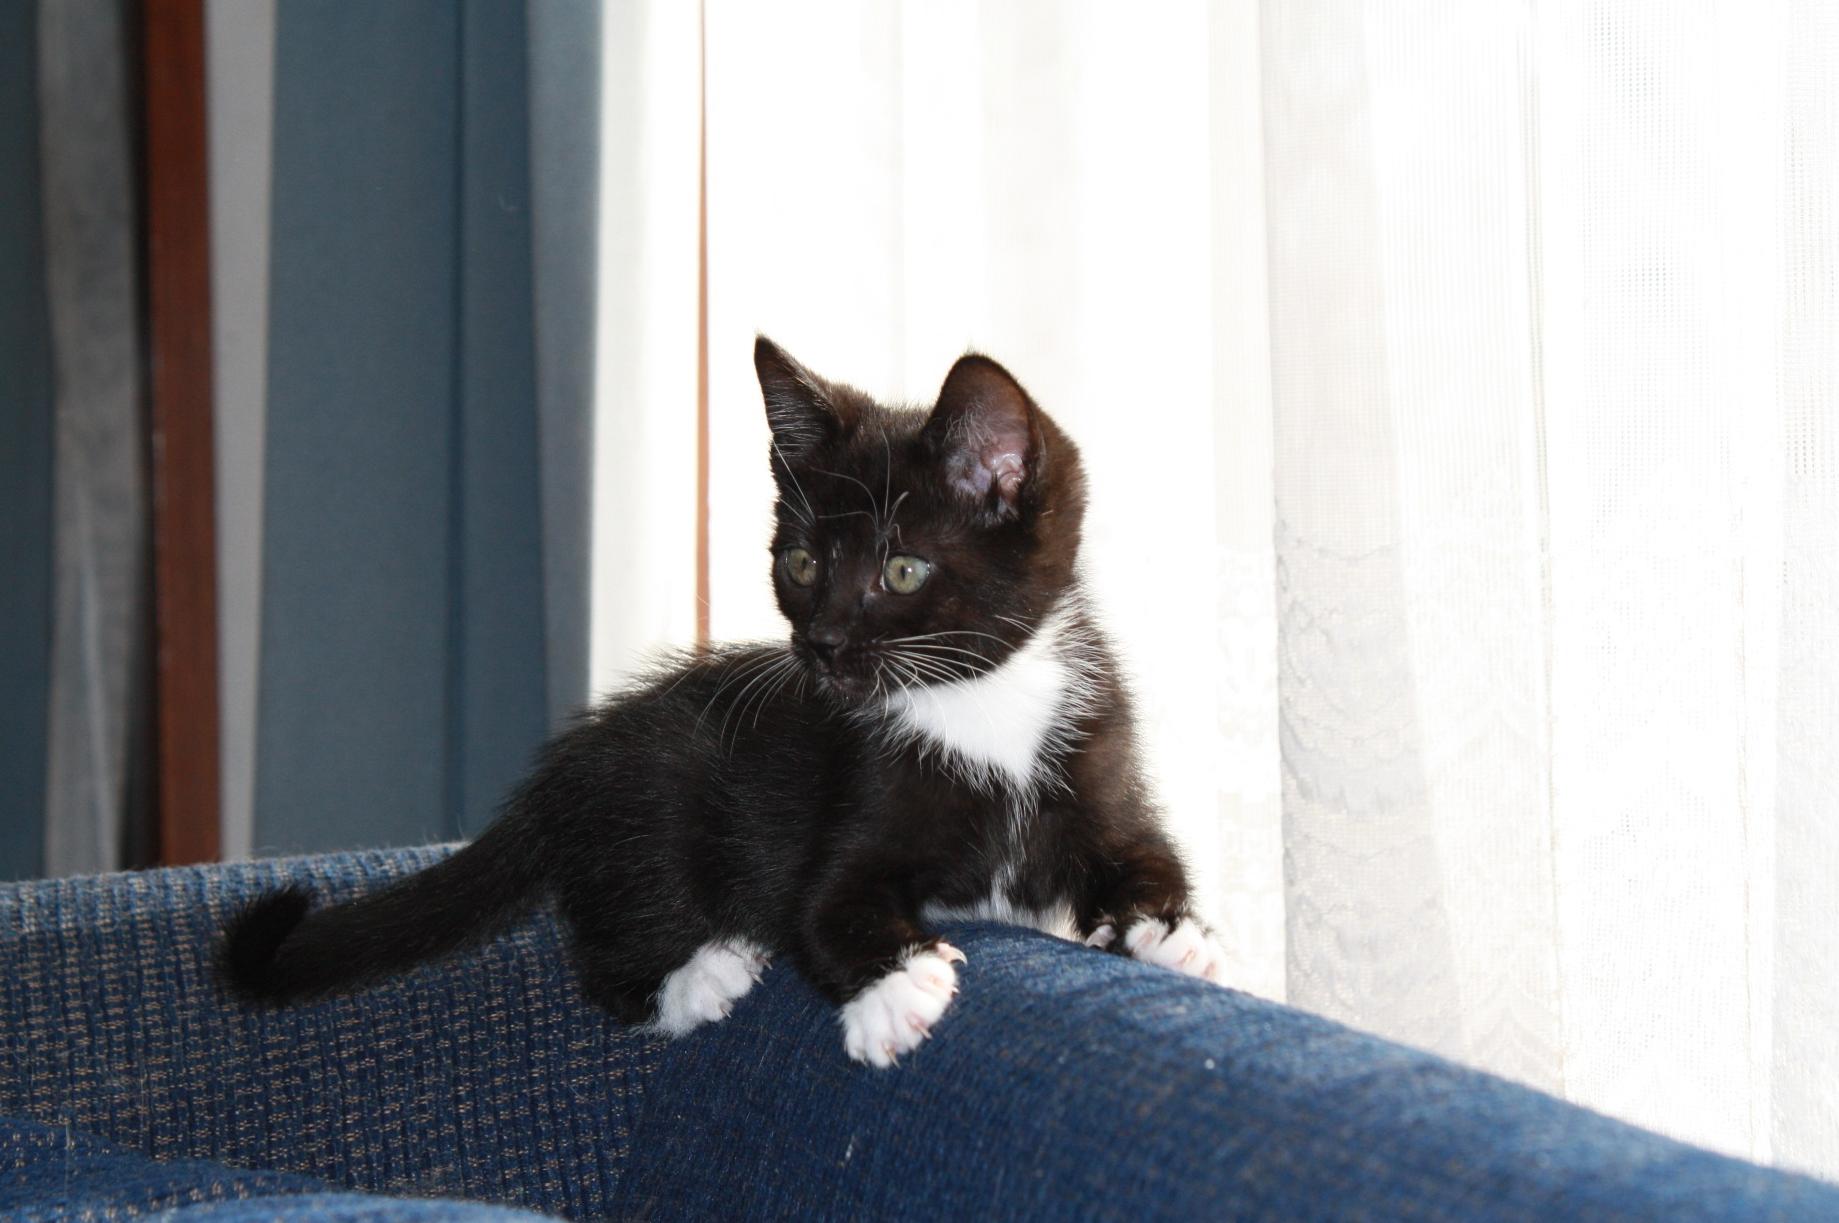 Free picture: black cat, interior, urban, window, animal, pet, portrait